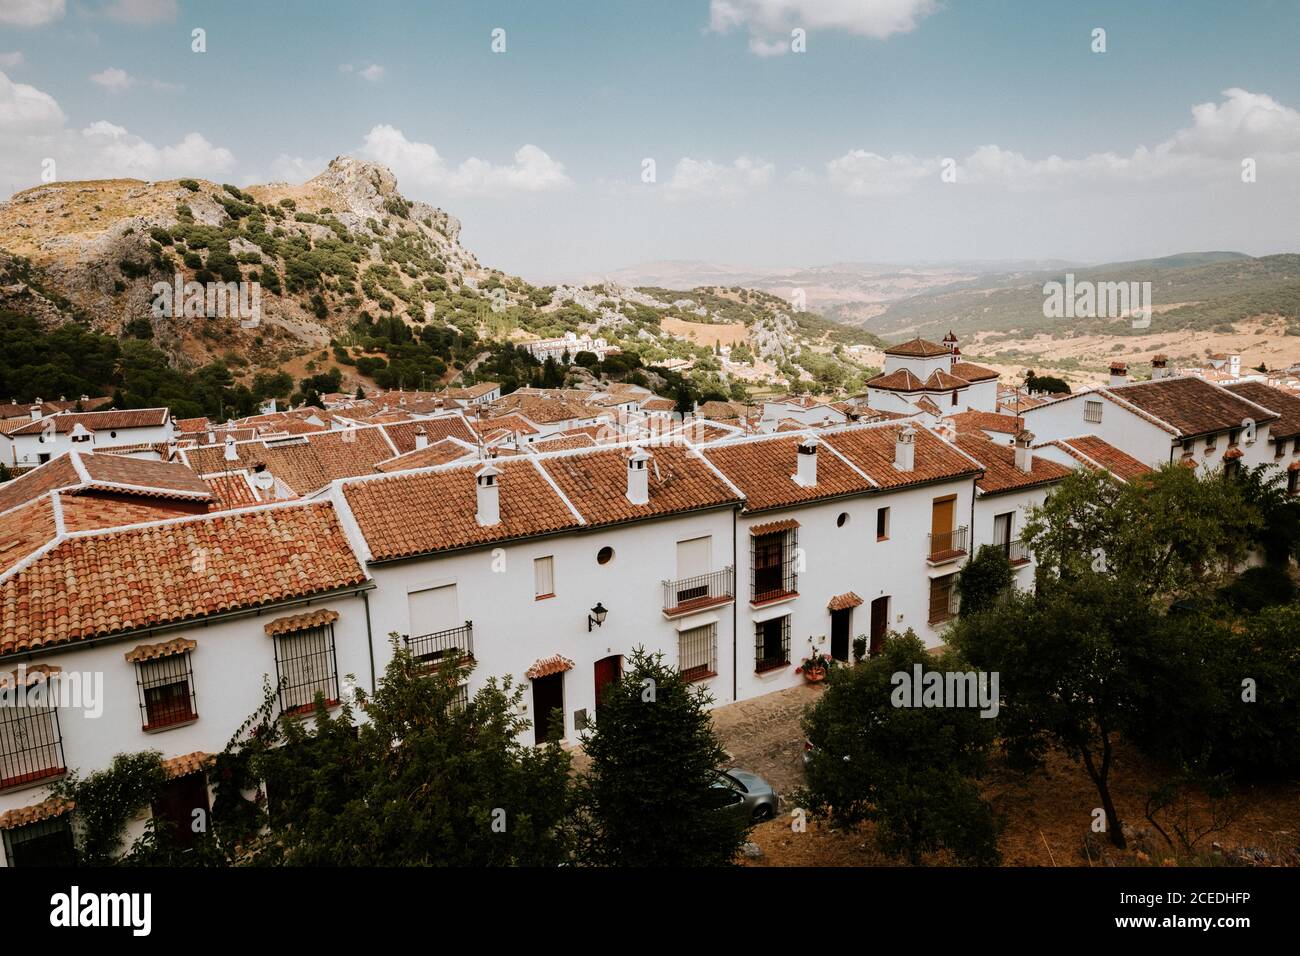 Magnifique vue de drone sur les bâtiments avec des toits de tuiles près de colline rugueuse le jour ensoleillé à Cadix, Espagne Banque D'Images